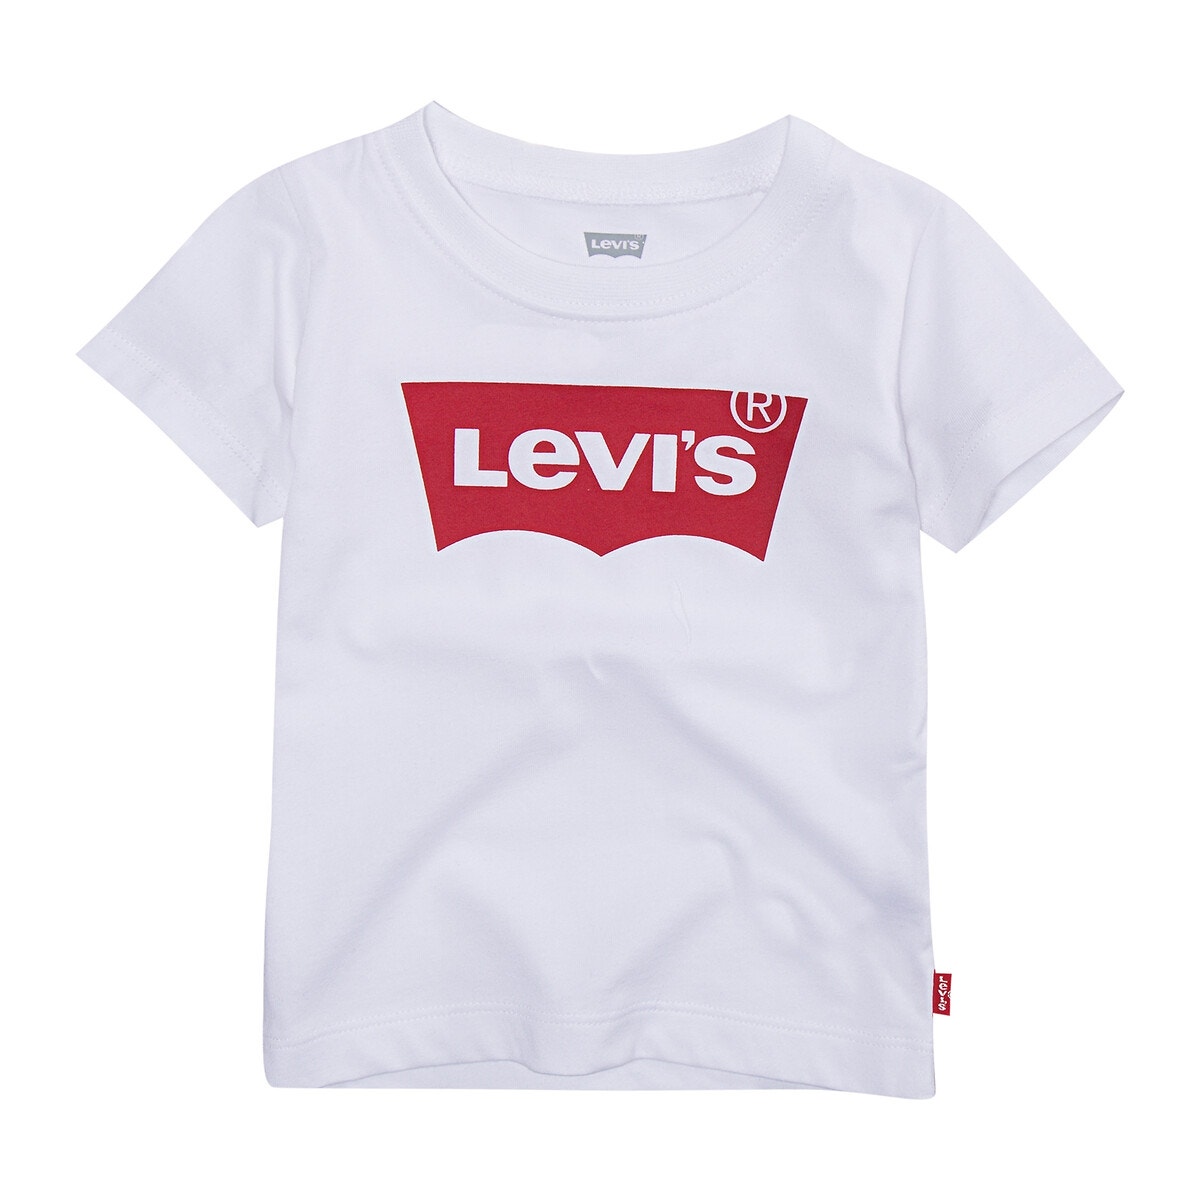 ΠΑΙΔΙ | Βρεφικά | Μπλούζες & Πουκάμισα | T-shirts T-shirt, 6 μηνών - 2 ετών